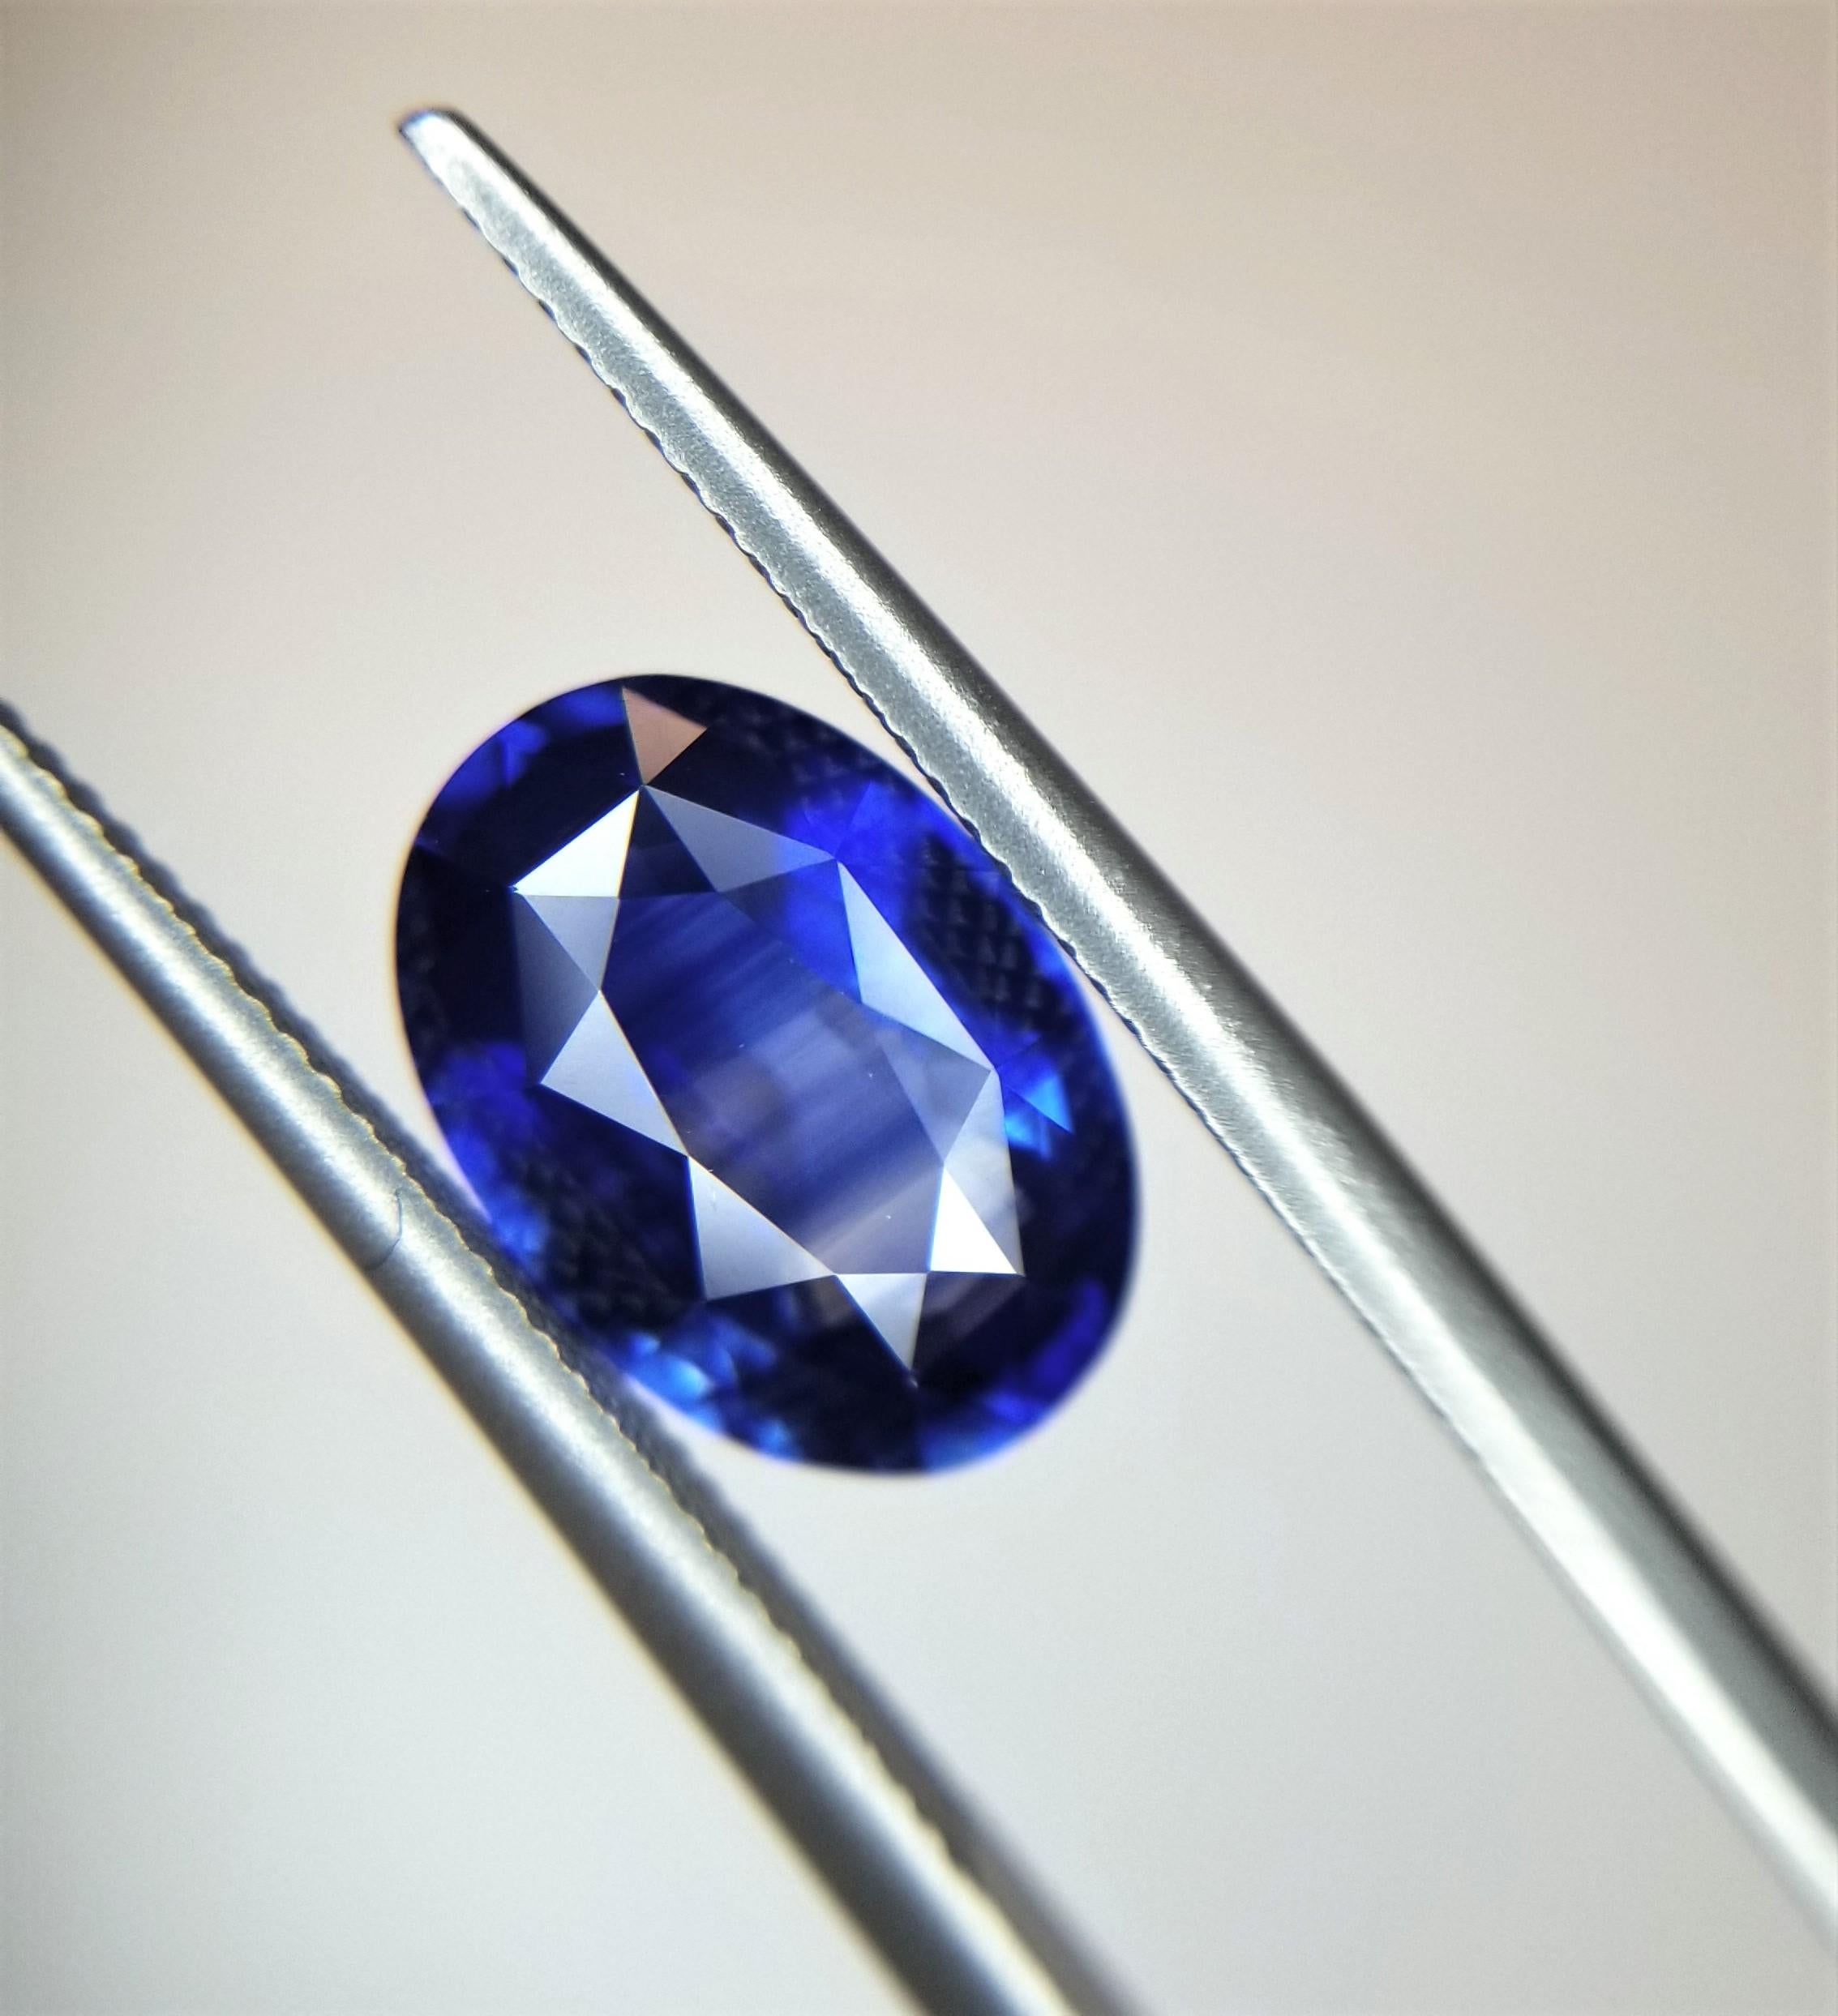 Berberyn Certified 3.08 Carat Oval Blue Sapphire Custom Pendant Necklace in 18k For Sale 1